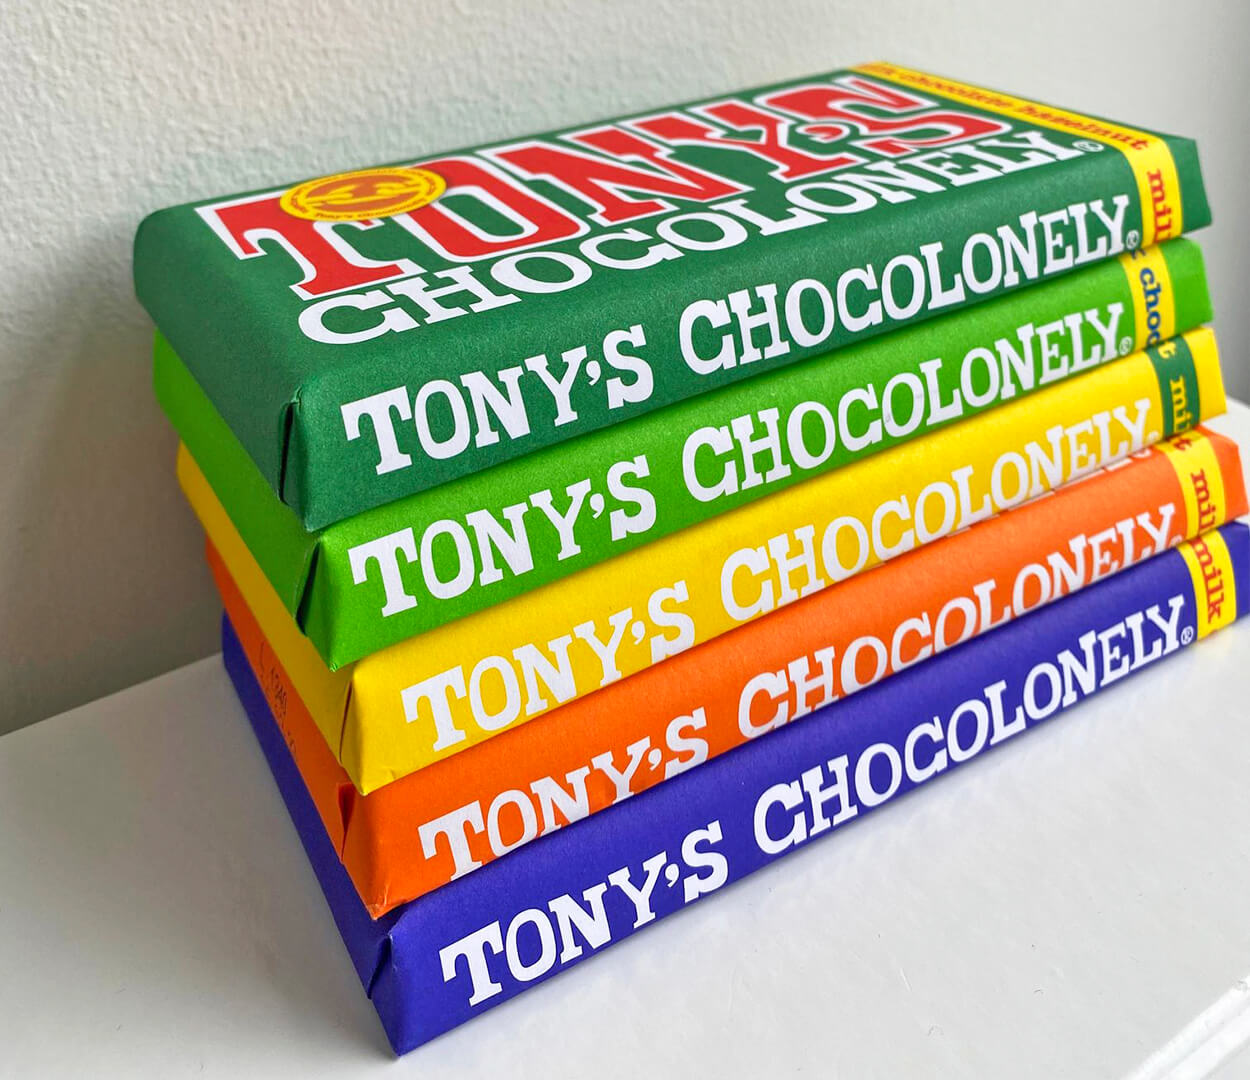 Reilun kaupan kaakaosta valmistettuja Tony's Chocolonely -suklaalevyjä pinossa.